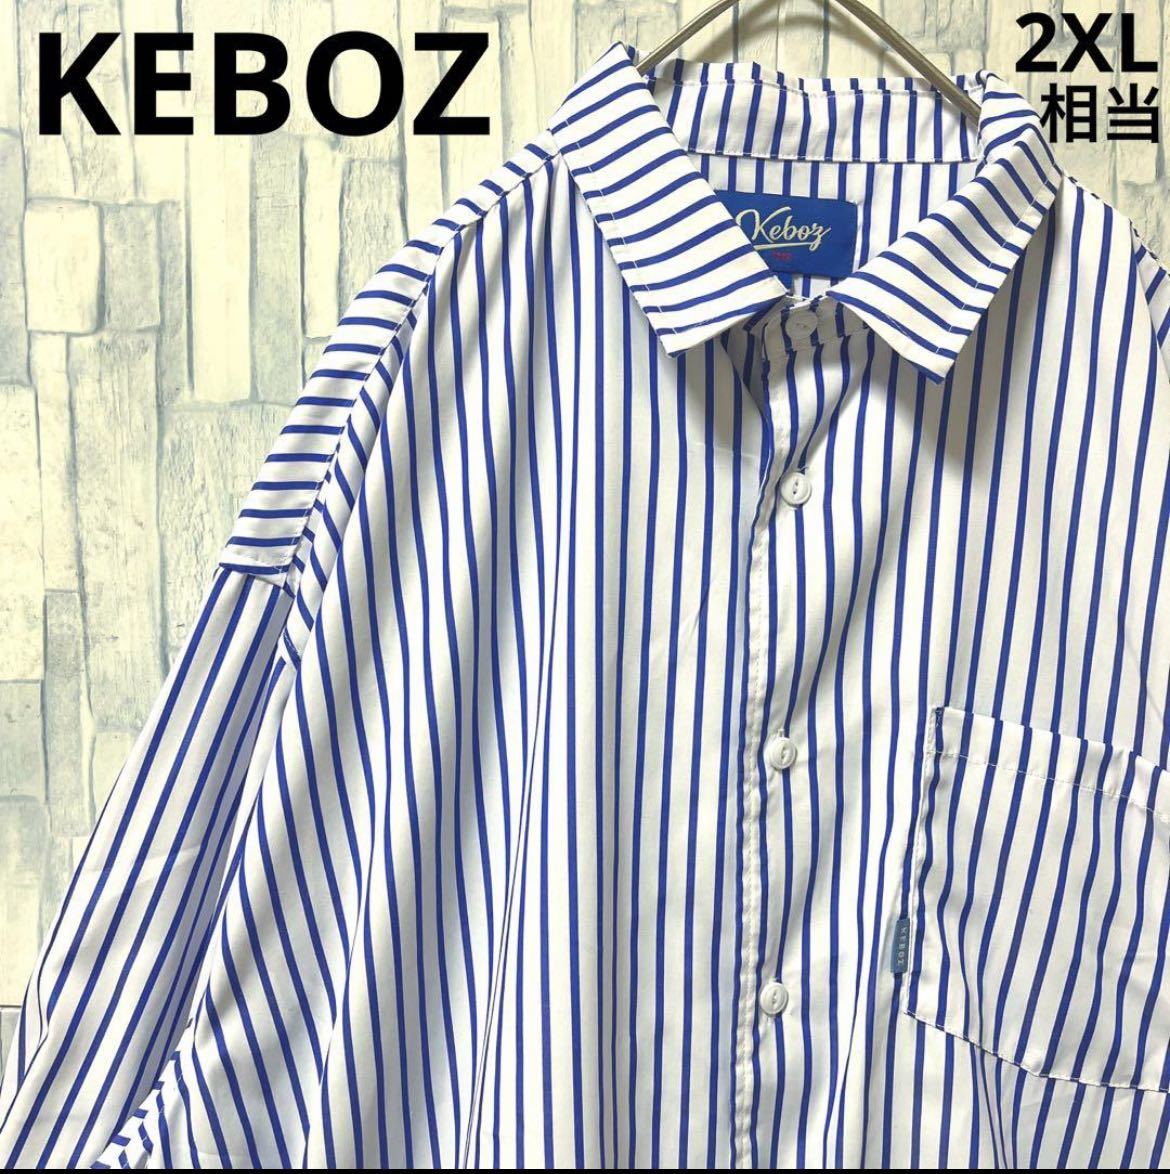 KEBOZ ケボズ ストライプシャツ サイズL 2XL相当 シンプルロゴ ブルー 長袖 美品 コムドットゆうた着用 送料無料